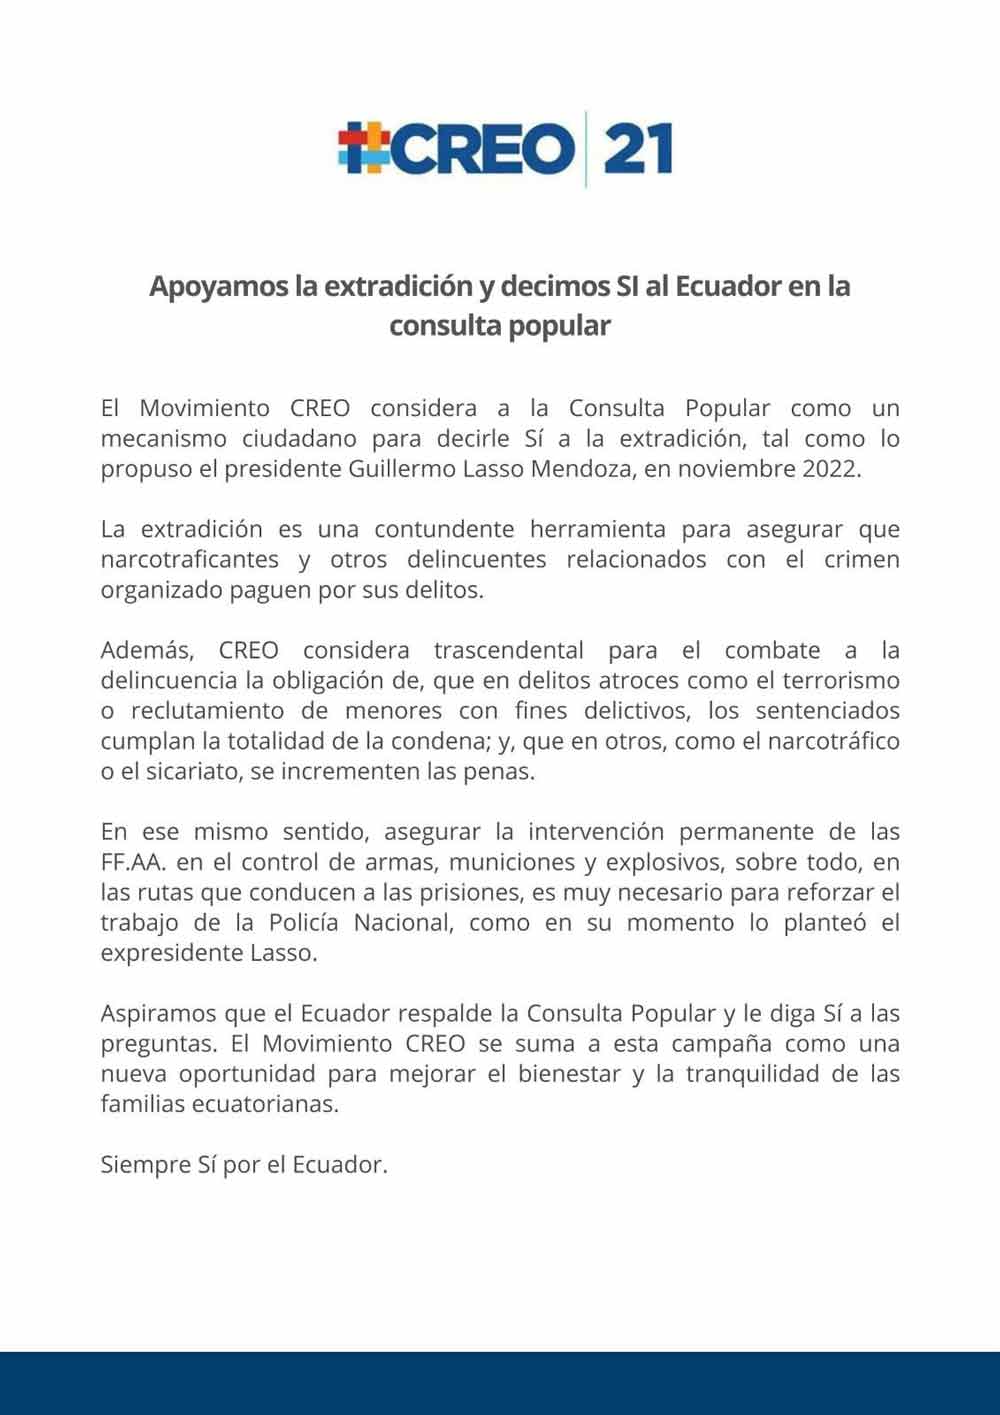 Consideramos a la Consulta Popular como un mecanismo ciudadano para decirle Sí a la extradición, tal como lo propuso el presidente Guillermo Lasso, en noviembre 2022.